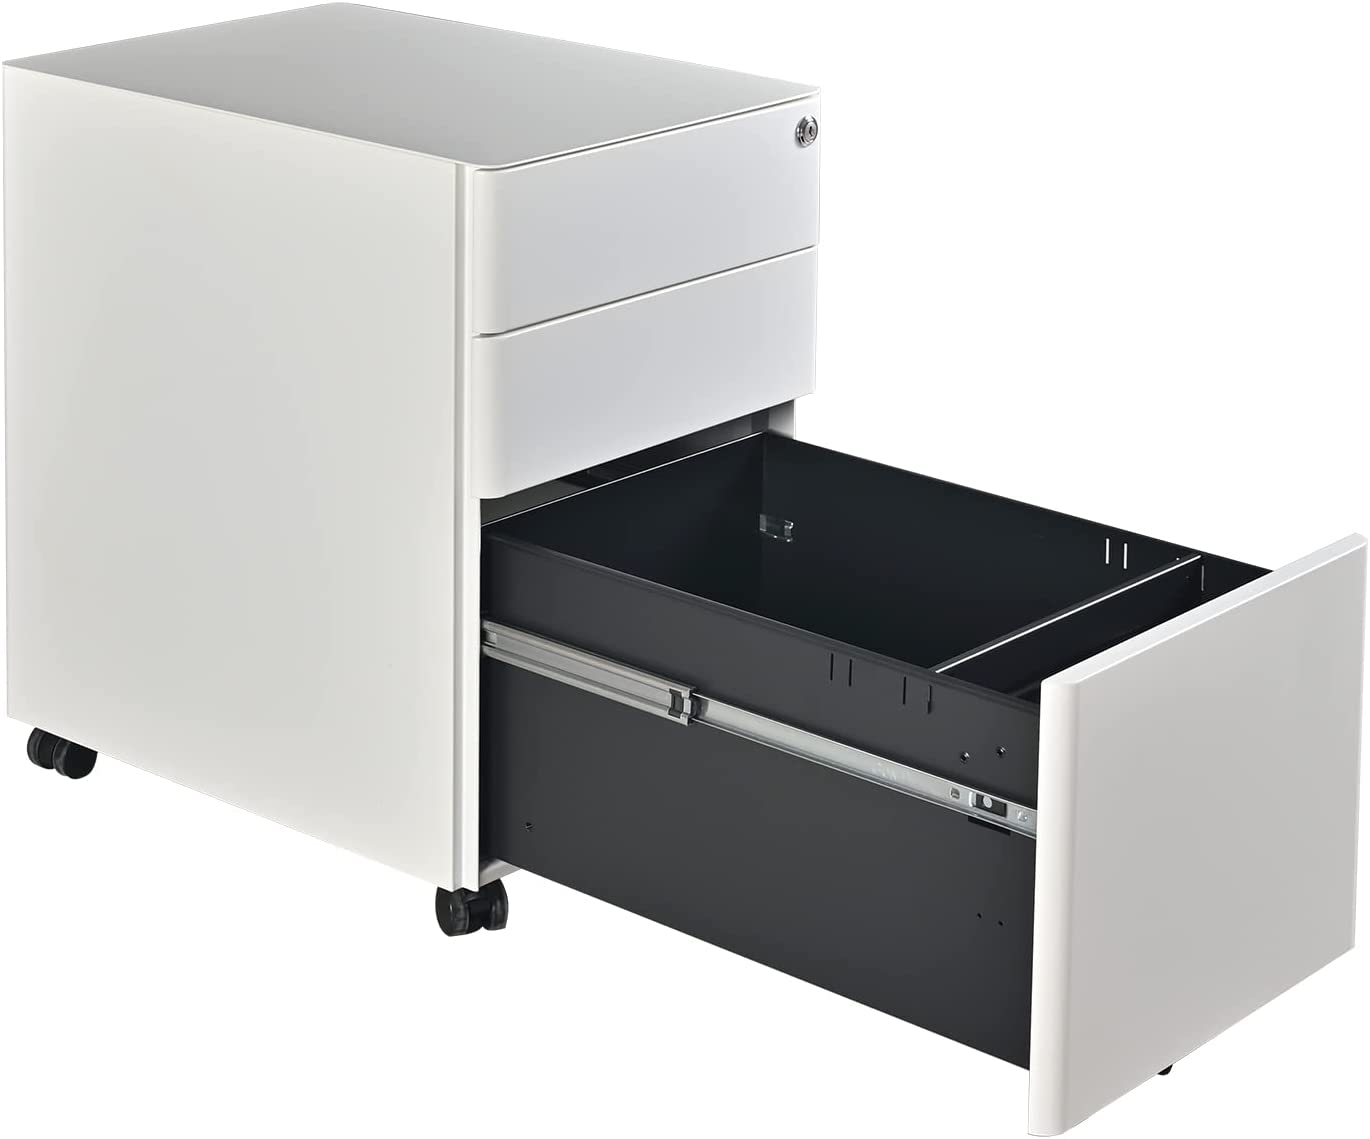 Mobile Pedestal, 3-Drawer File Cabinet, Under desk Drawer with Castor Wheels by Navodesk®